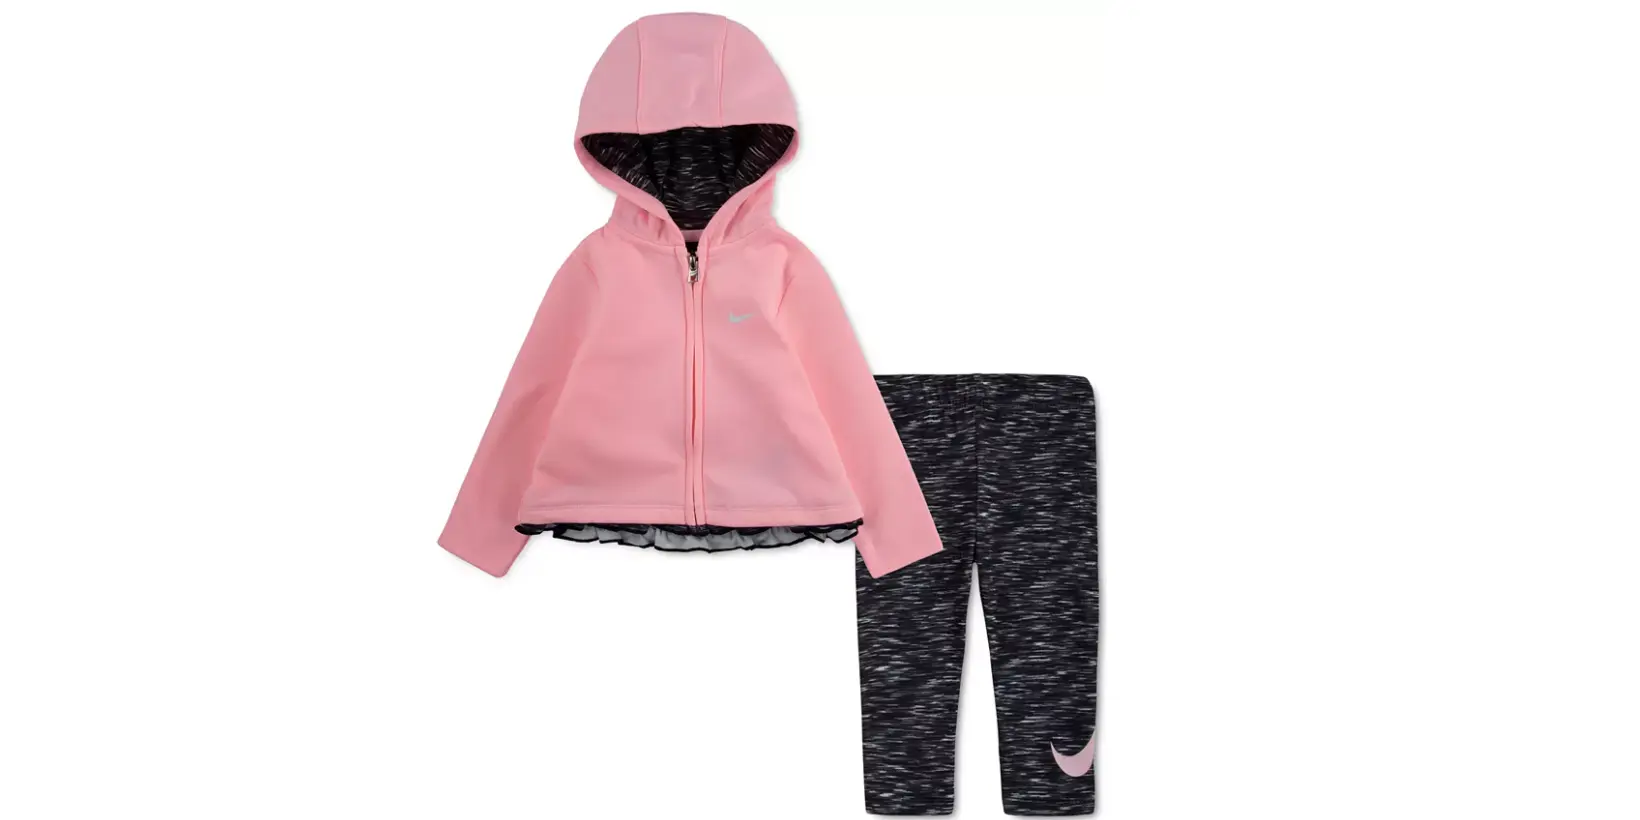 Macy - Nike Baby Girl 2Pc Hooded & Legging